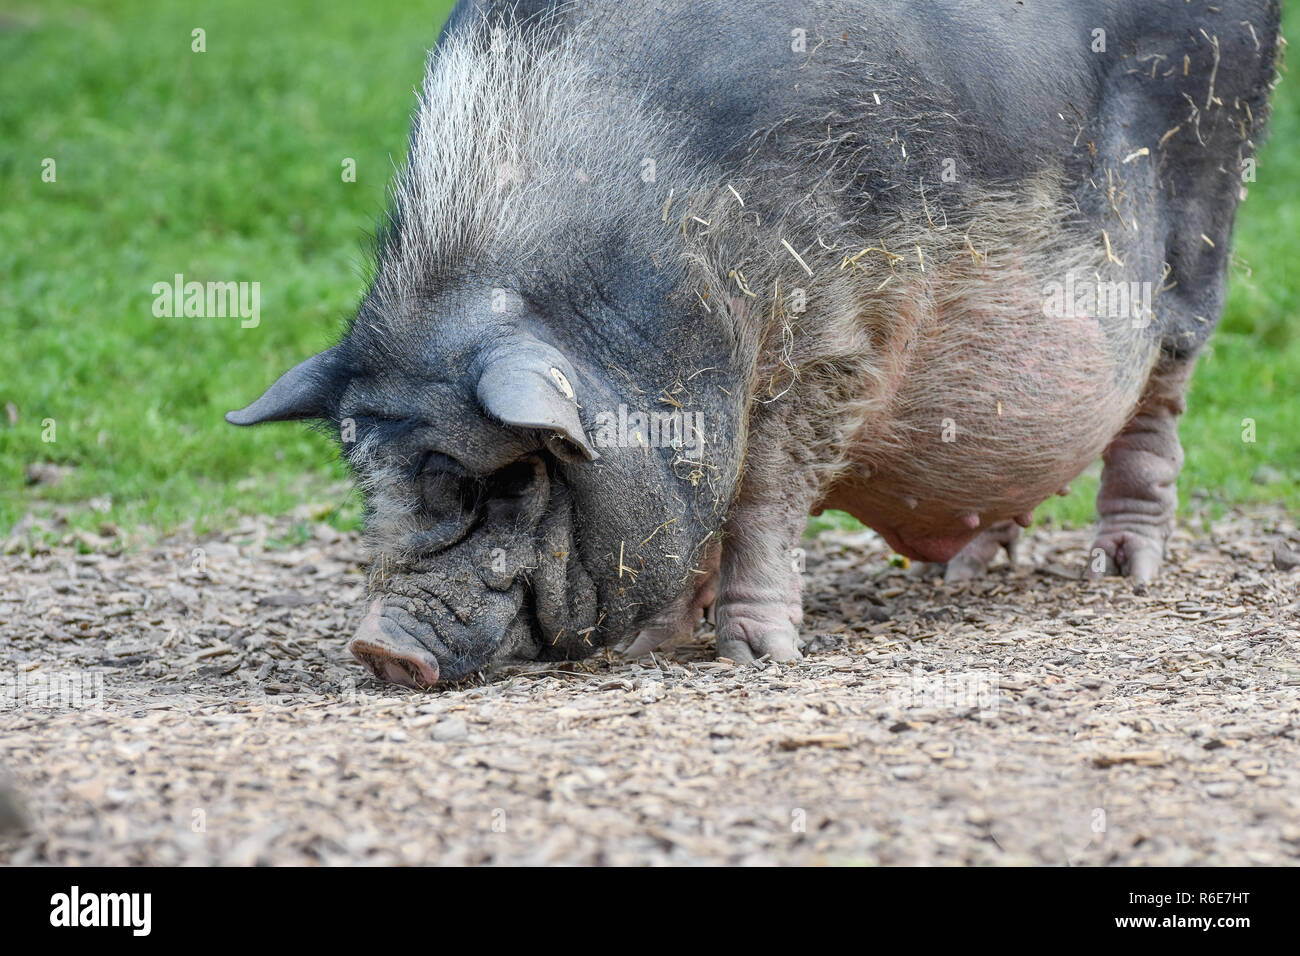 Hängebauchschwein ausgewachsen sucht nach Futter Stock Photo